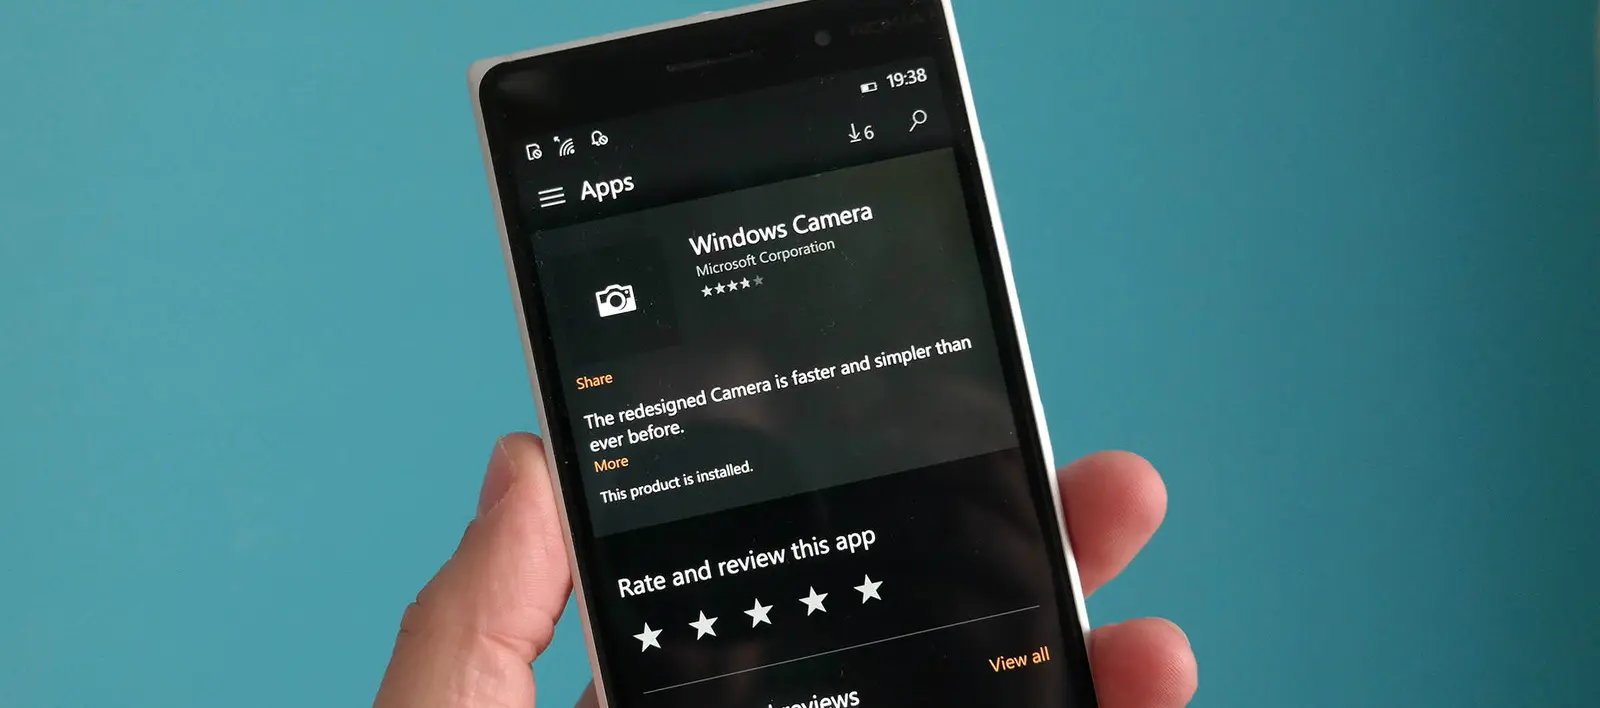 Windows Camera añade soporte Slow-Motion en Windows 10 Mobile